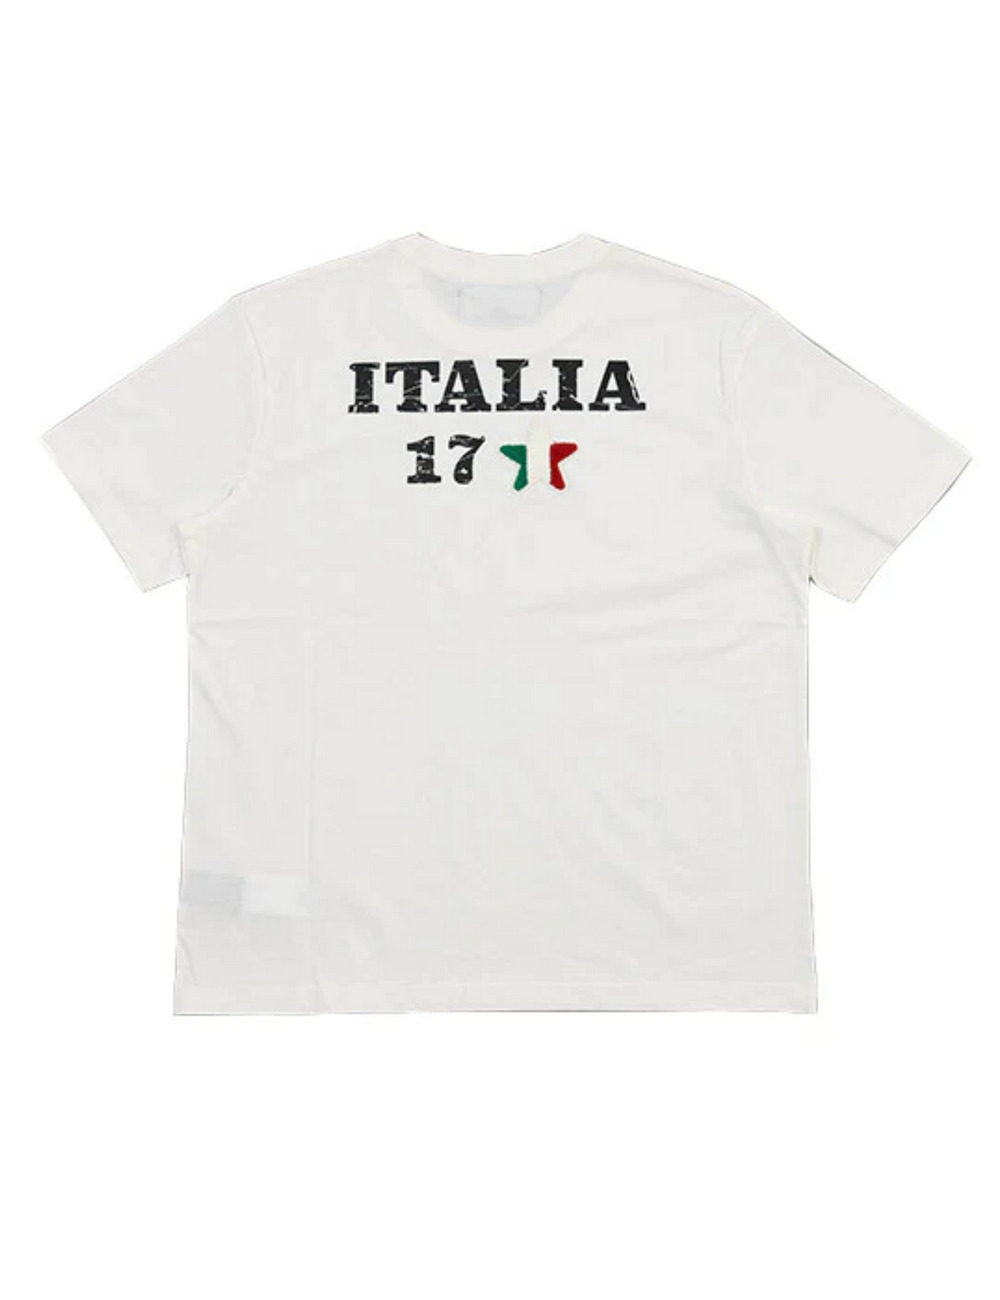 イタリア17Tシャツ(半袖) / ITALIA 17 T SHIRT 詳細画像 ホワイト 2